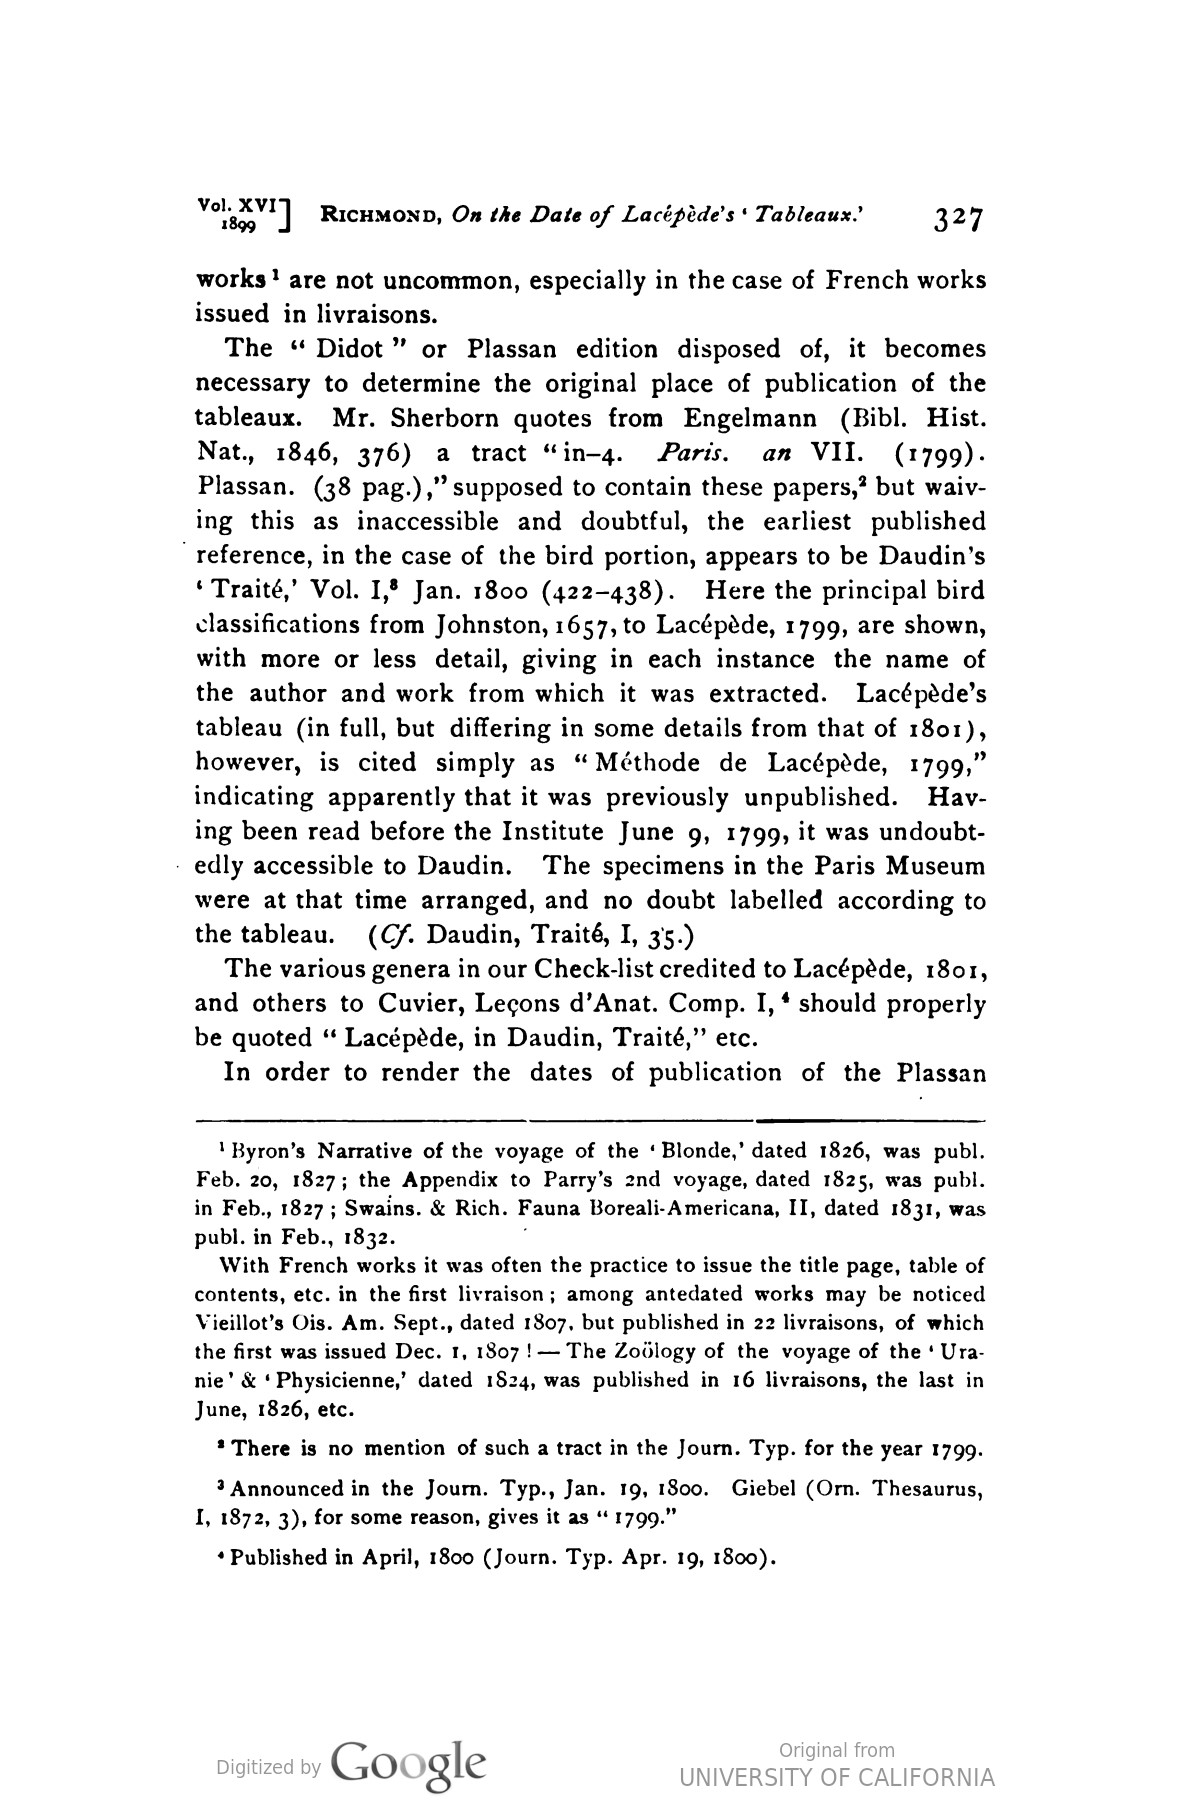 Richmond footnote 1899